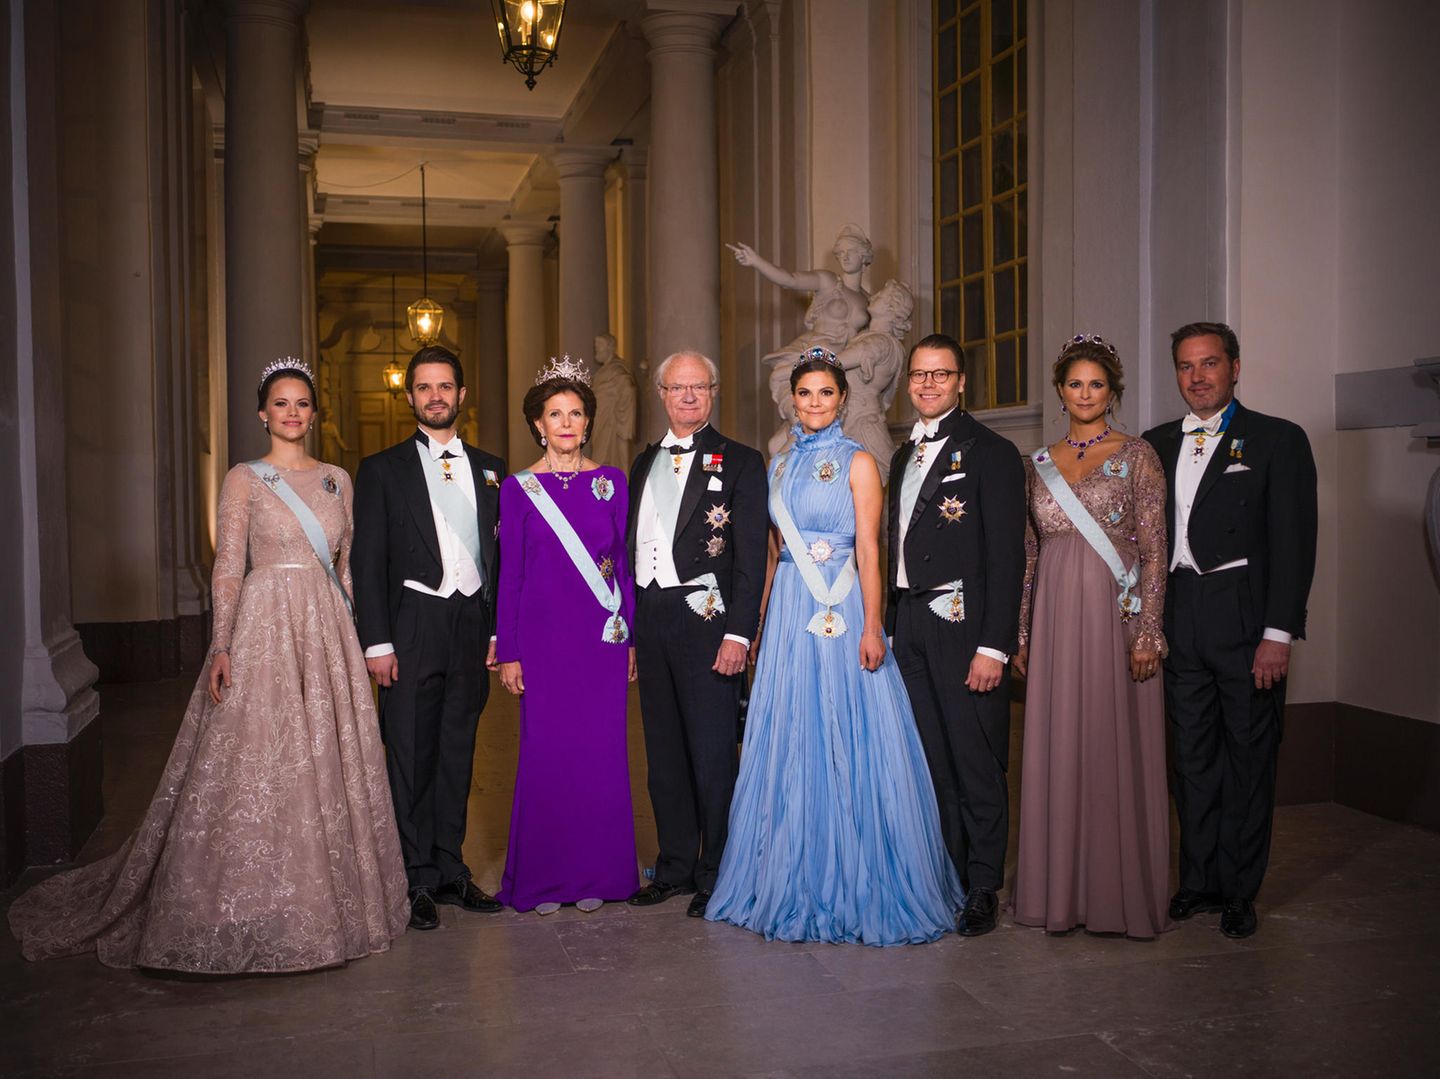 Die königliche Familie posiert für die Fotografen.